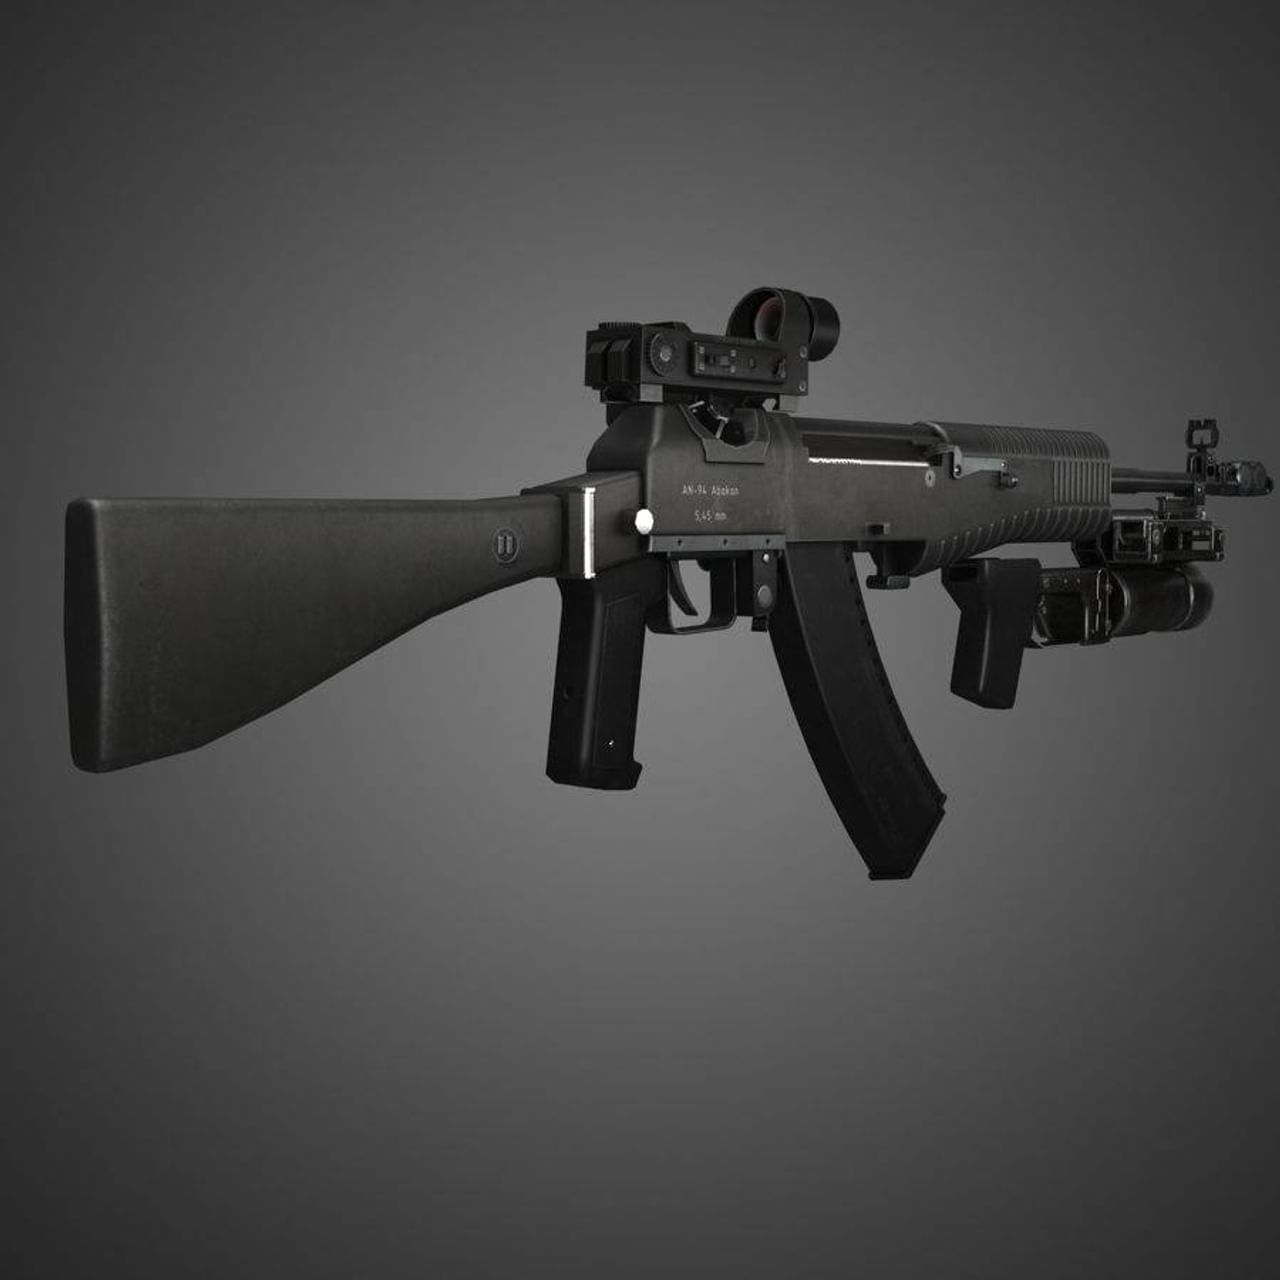 पंजाबी गायक सिद्धू मूसेवाला यांच्या वाहनावर ३० राऊंड फायर करत त्यांची हत्या करण्यात आली आहे. काही सेकंदात इतक्या गोळ्या झाडण्यासाठी स्वयंचलित असॉल्ट रायफलची आवश्यकता असते. सिद्धूला मारण्यासाठी वापरलेल्या बंदुकीचे नाव, म्हणजे AN-94. ही रायफल होय,  रशियाने AK-47 च्या जागी वापरण्यासाठी याची निर्मिती केली. परंतु सध्या अनेक देशांमध्ये त्याचा वापर केला जात नाही. 
